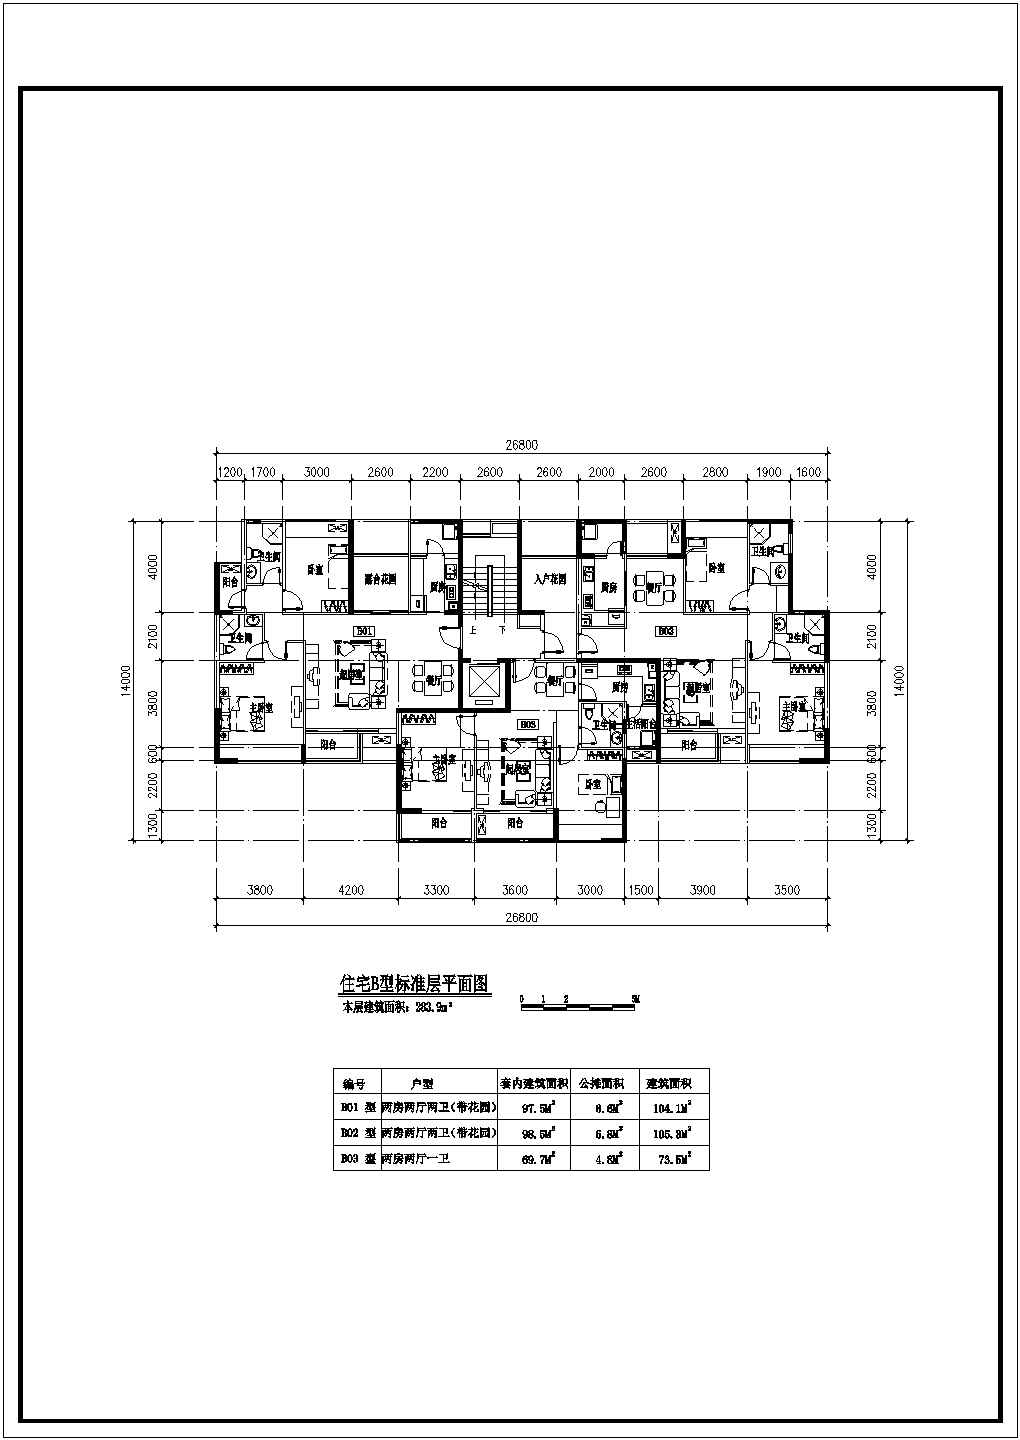 龙岩公寓户型平面布置详细建筑施工图